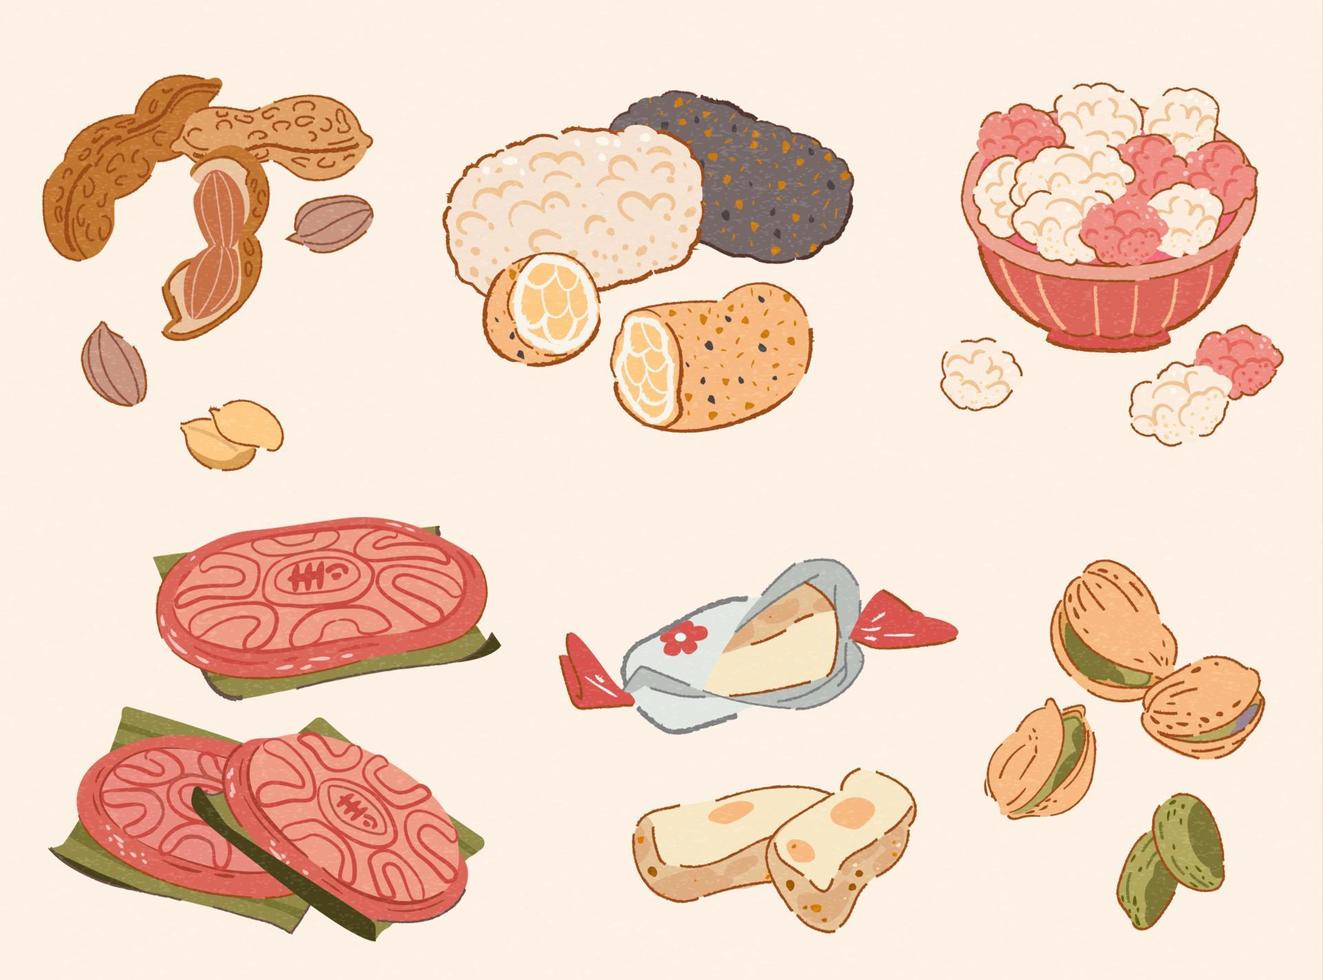 Taiwan CNY traditioneel tussendoortje verzameling in tekening stijl. voedsel elementen inclusief gekookt pinda's, sesam rijst- knapperig, suiker gecoat pinda's, rood kleverig rijst- taart, nougat, en pistachenoten. vector